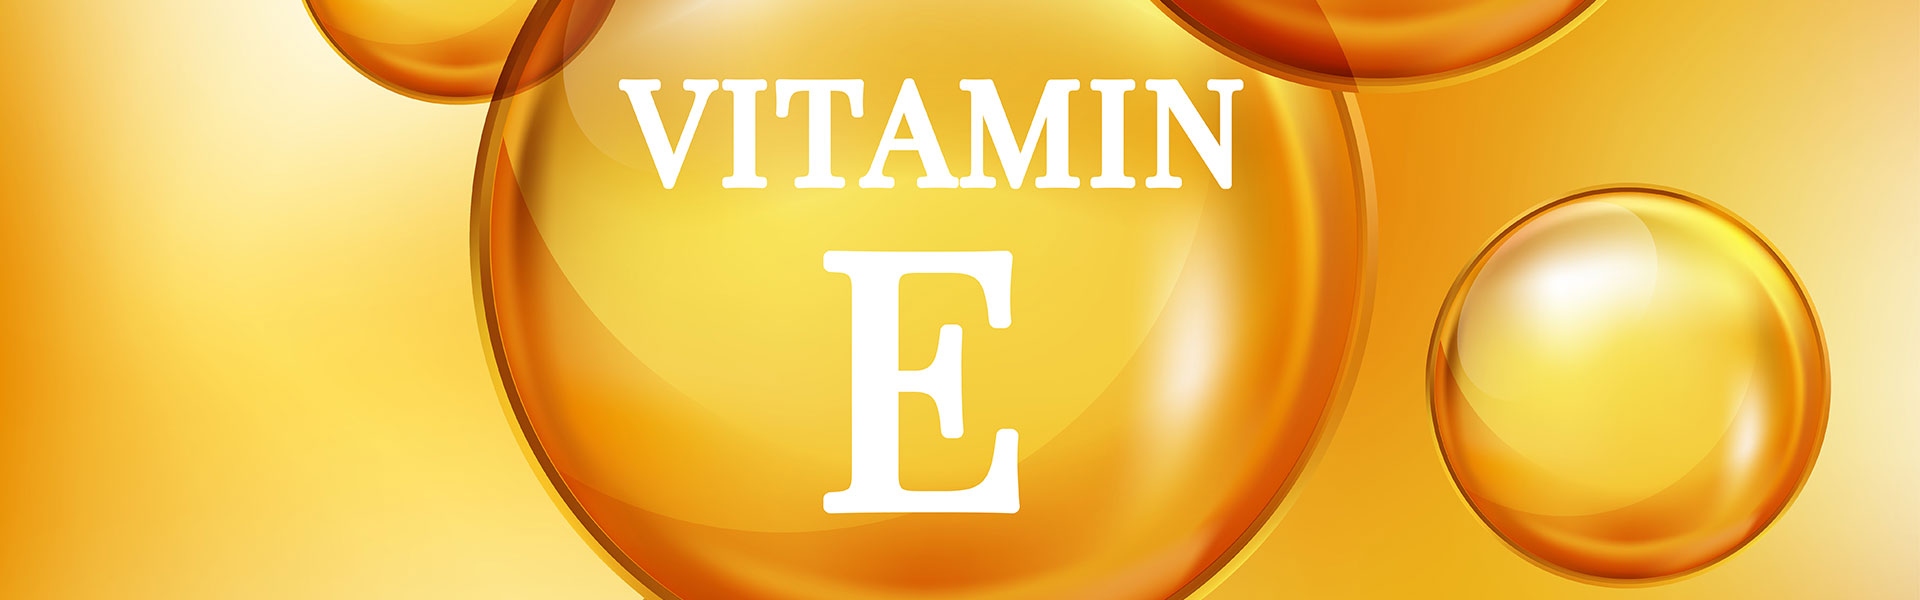 Μάθε για τη Βιταμίνη E